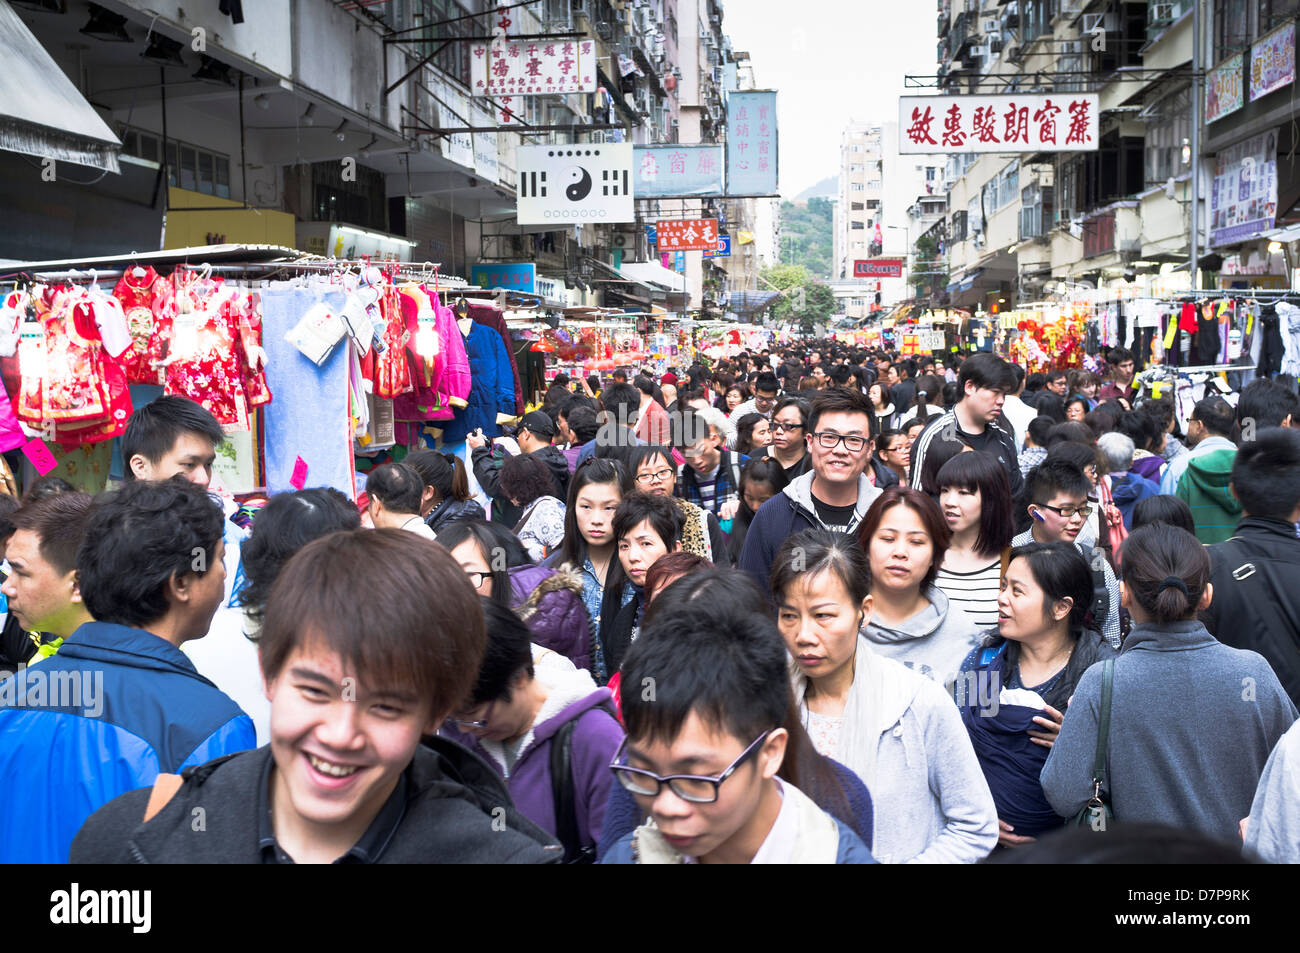 dh Ladies Market tung choi st MONG KOK HONGKONG Chinesische Menschenmassen Markt Straße Menschen china geschäftige Menge mongkok überfüllt Straßenszene Stockfoto